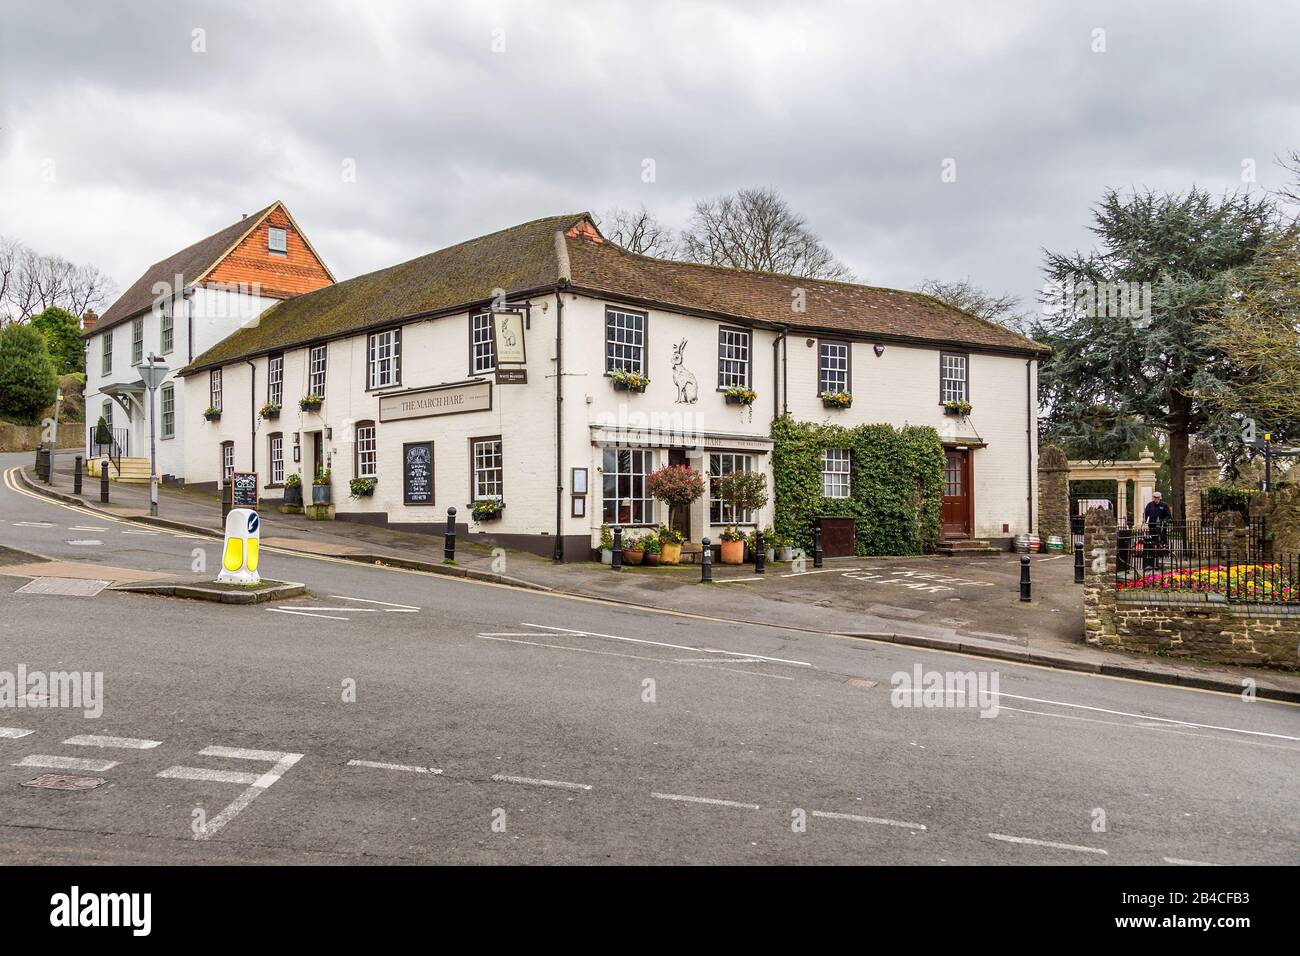 Un pittoresco pub inglese imbiancato a calce e un ristorante chiamato The March Hare. La Piazza del Castello, Guildford, Surrey, Inghilterra. Foto Stock